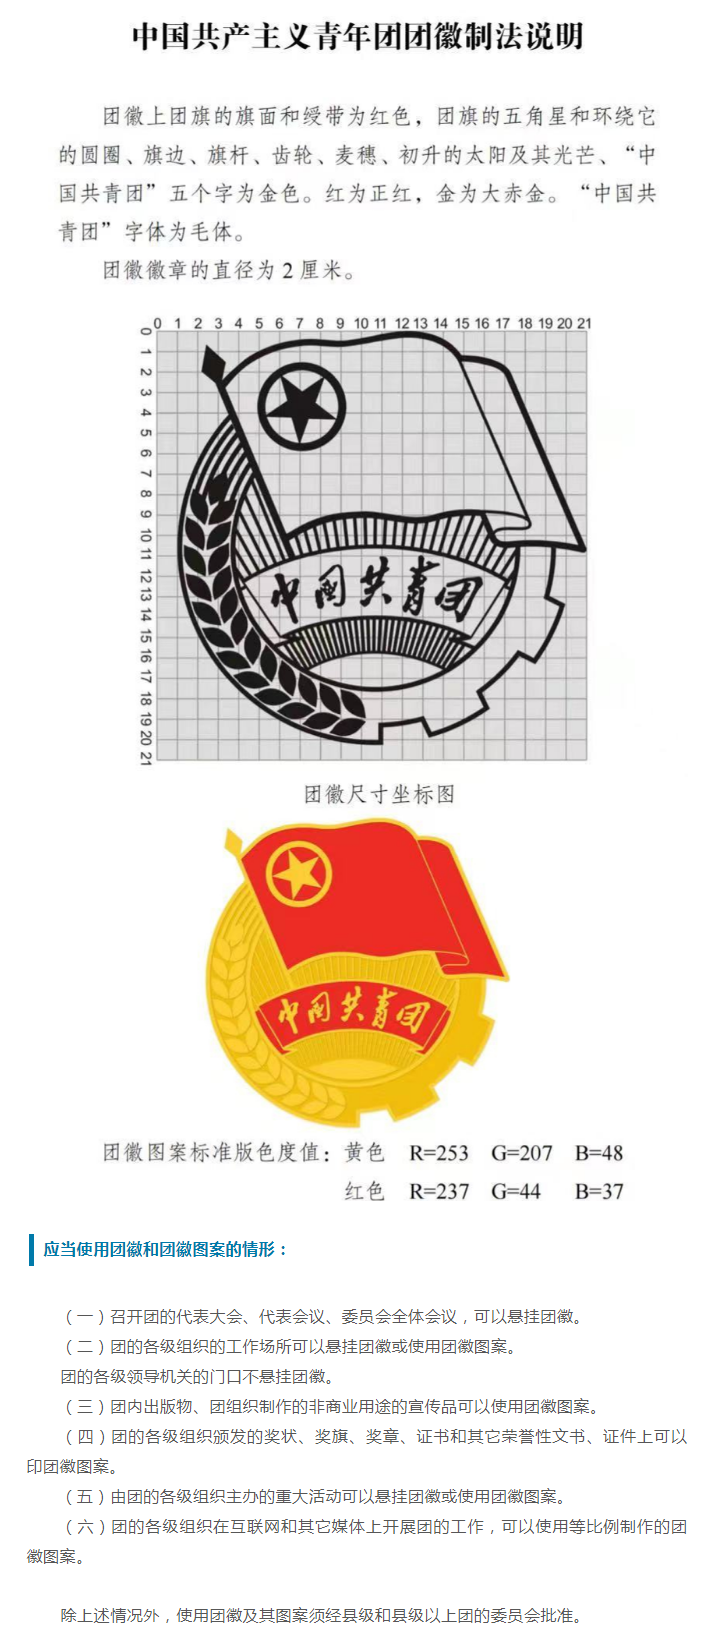 中国共产主义青年团团旗、团徽国家标准发布副本.png